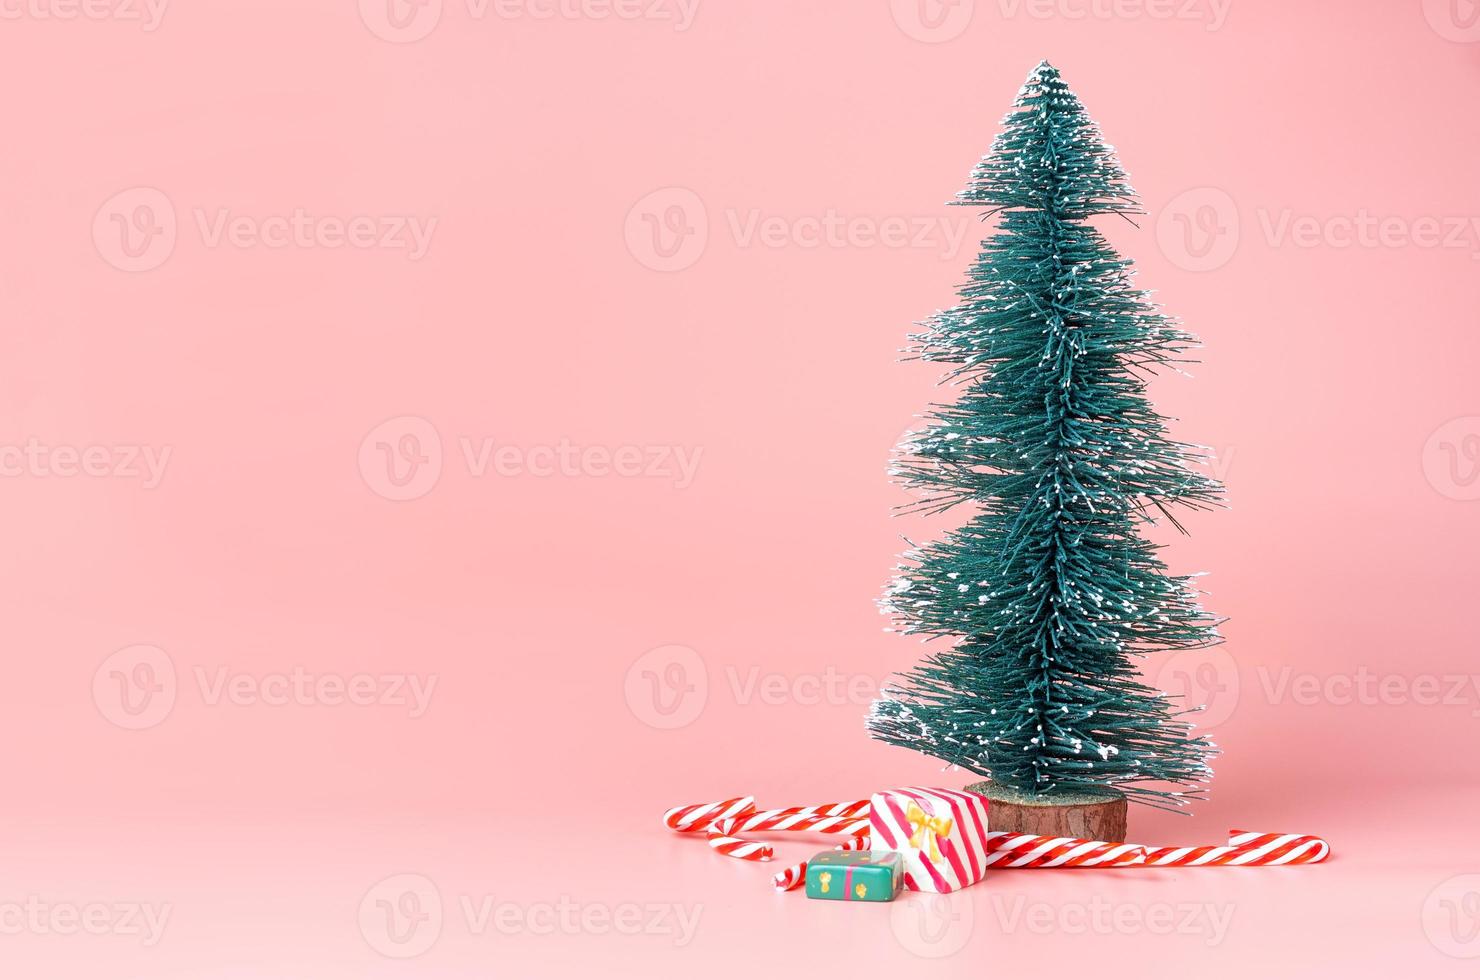 ree kerstboom met snoepgoed op pastelroze studioachtergrond foto